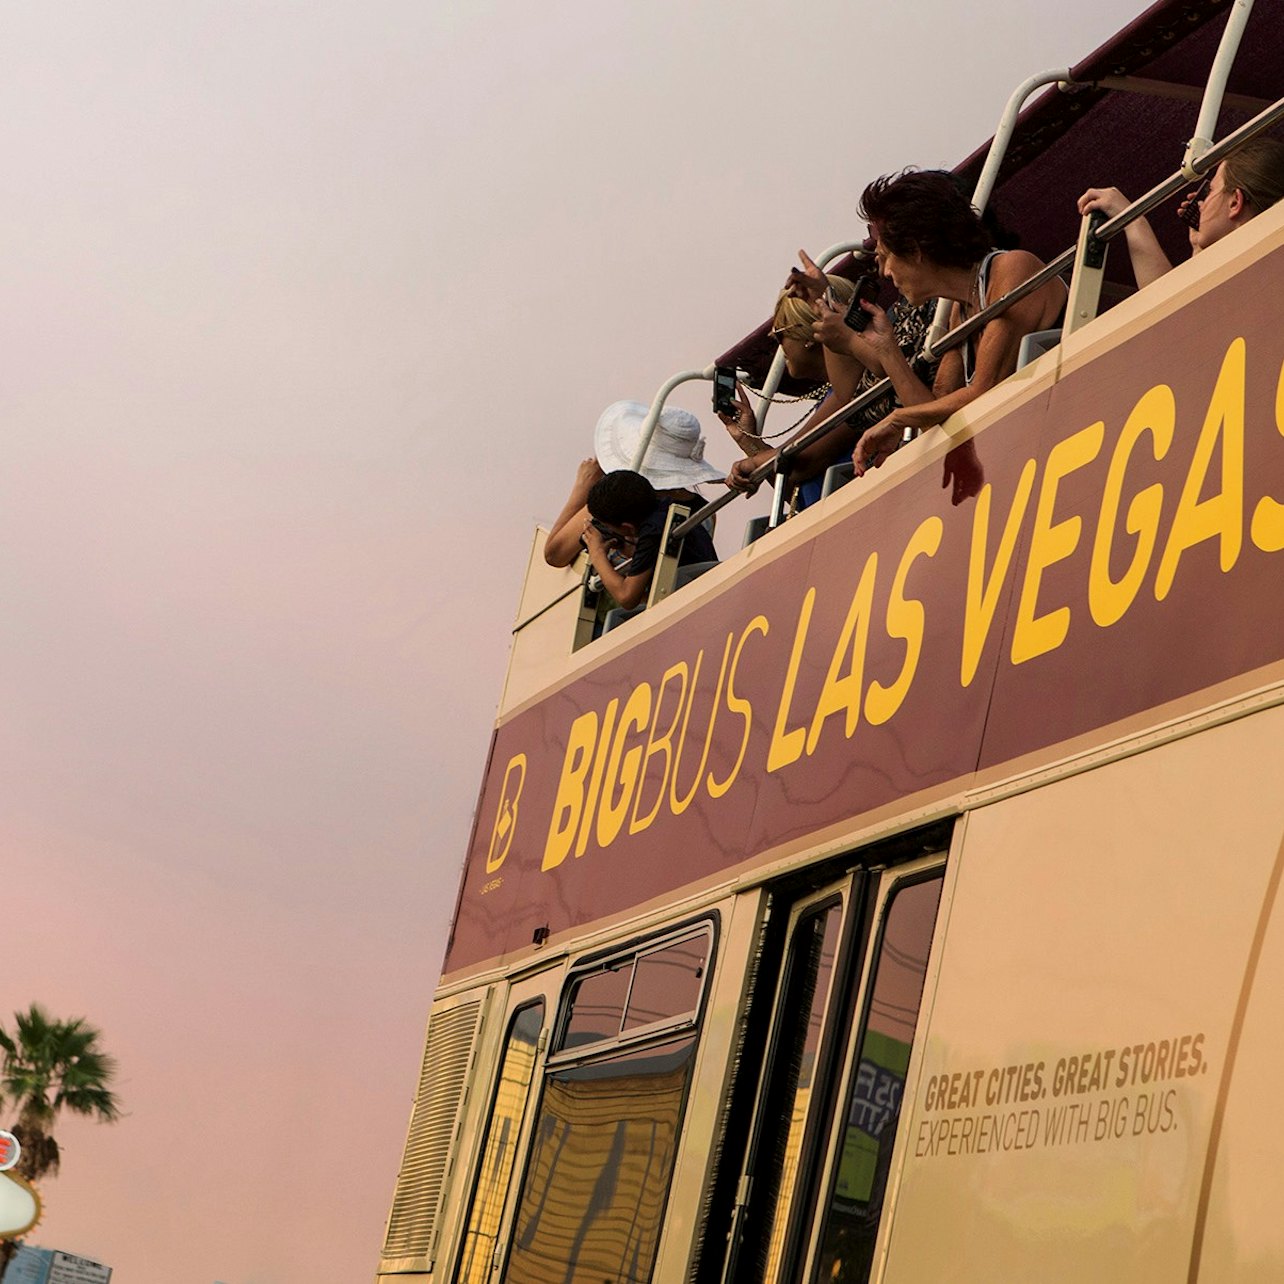 Big Bus Las Vegas: Passeio de ônibus hop-on hop-off - Acomodações em Las Vegas, Nevada